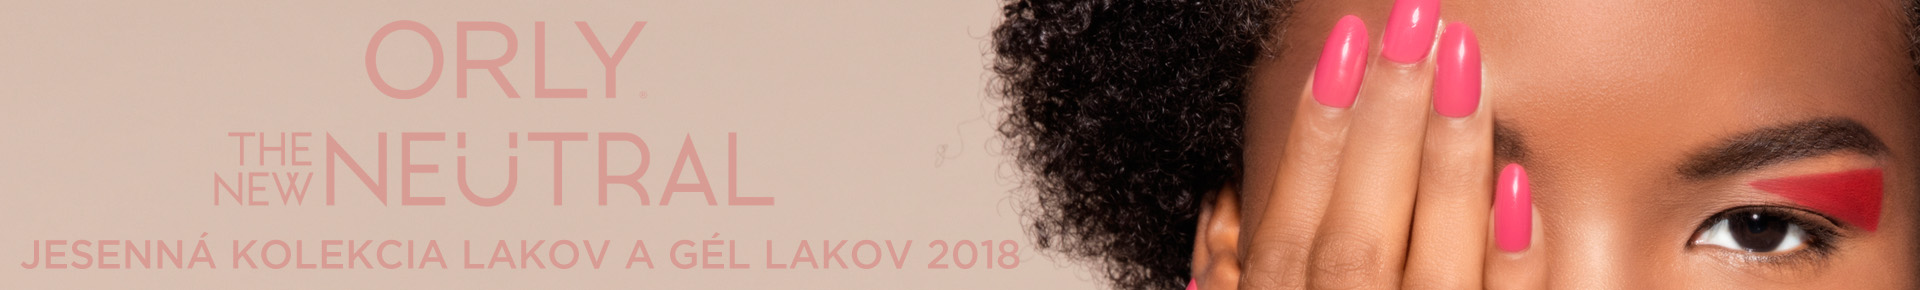 ORLY THE NEW NEUTRAL - JESENNÁ KOLEKCIA LAKOV A GÉL LAKOV 2018